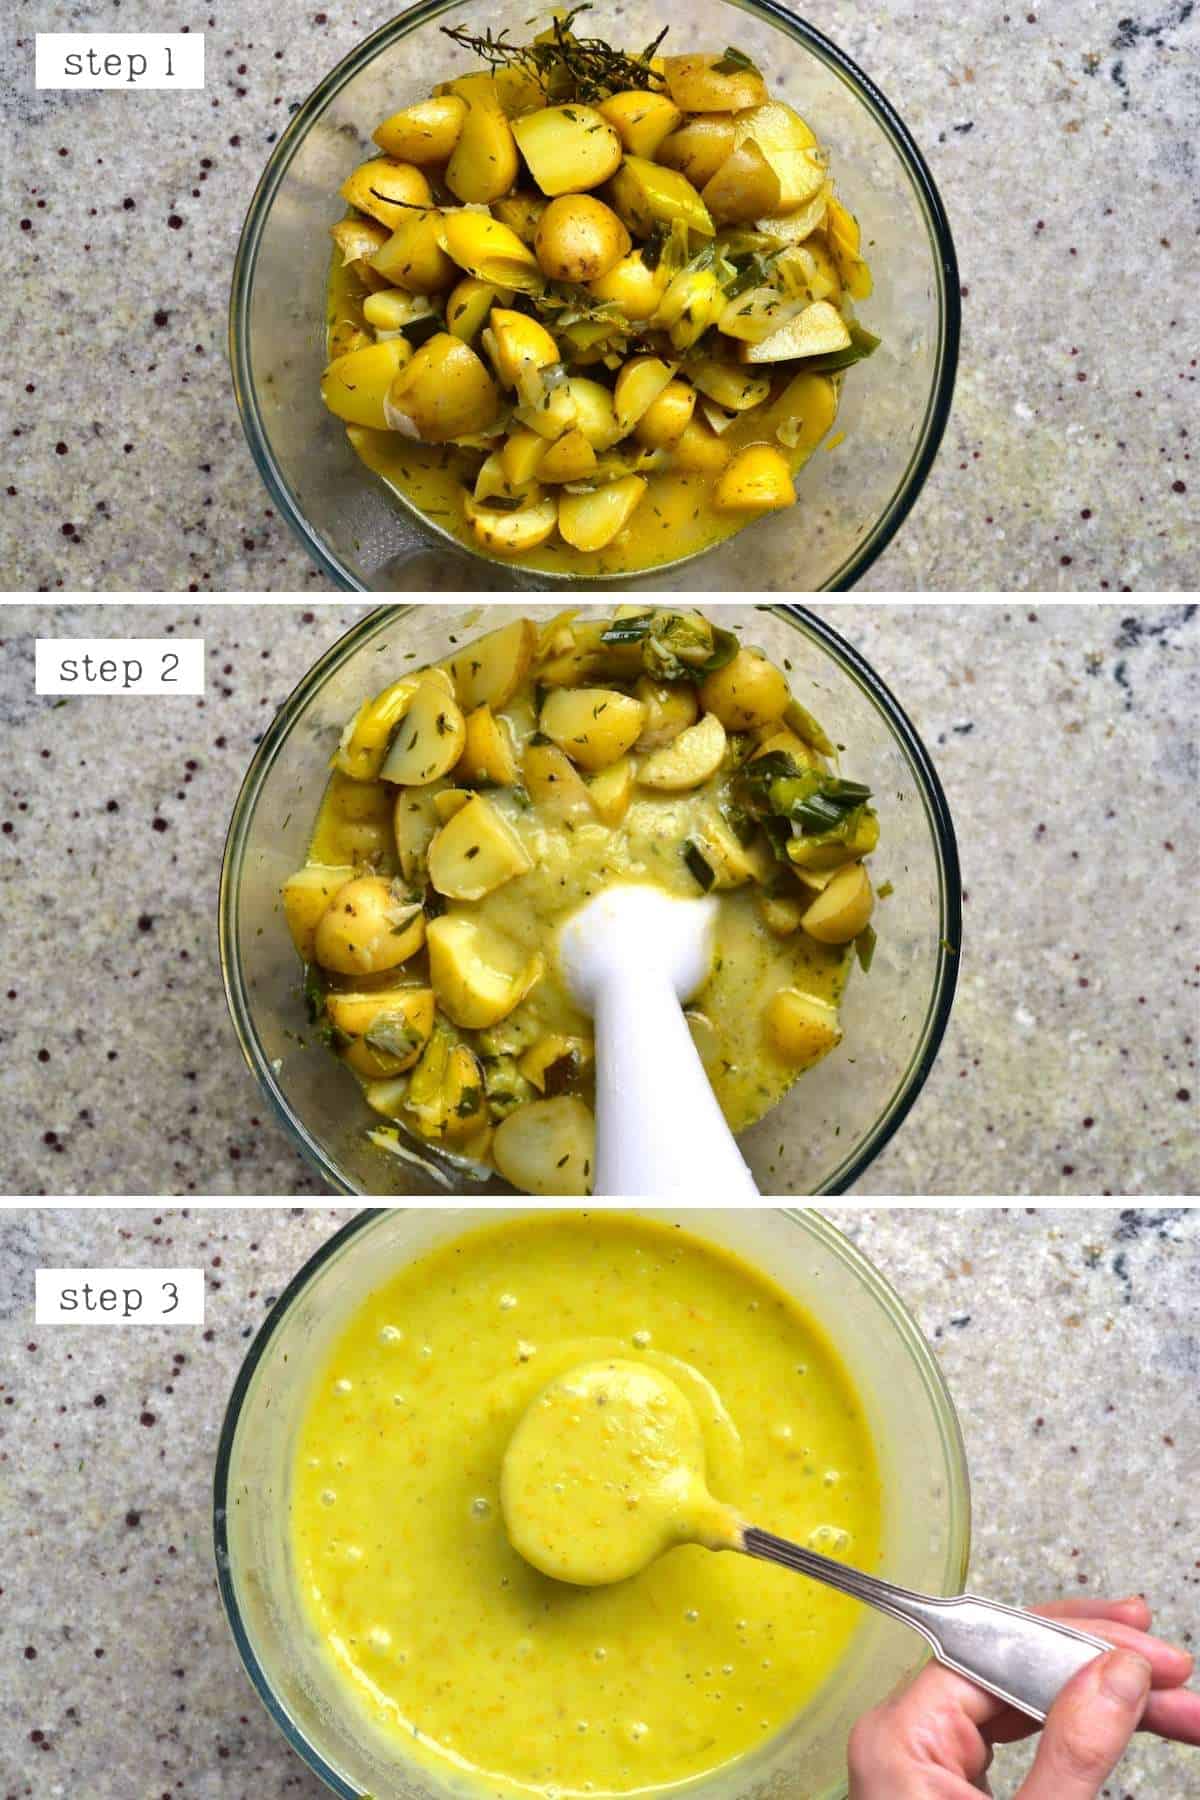 Steps for making creamy potato leek soup